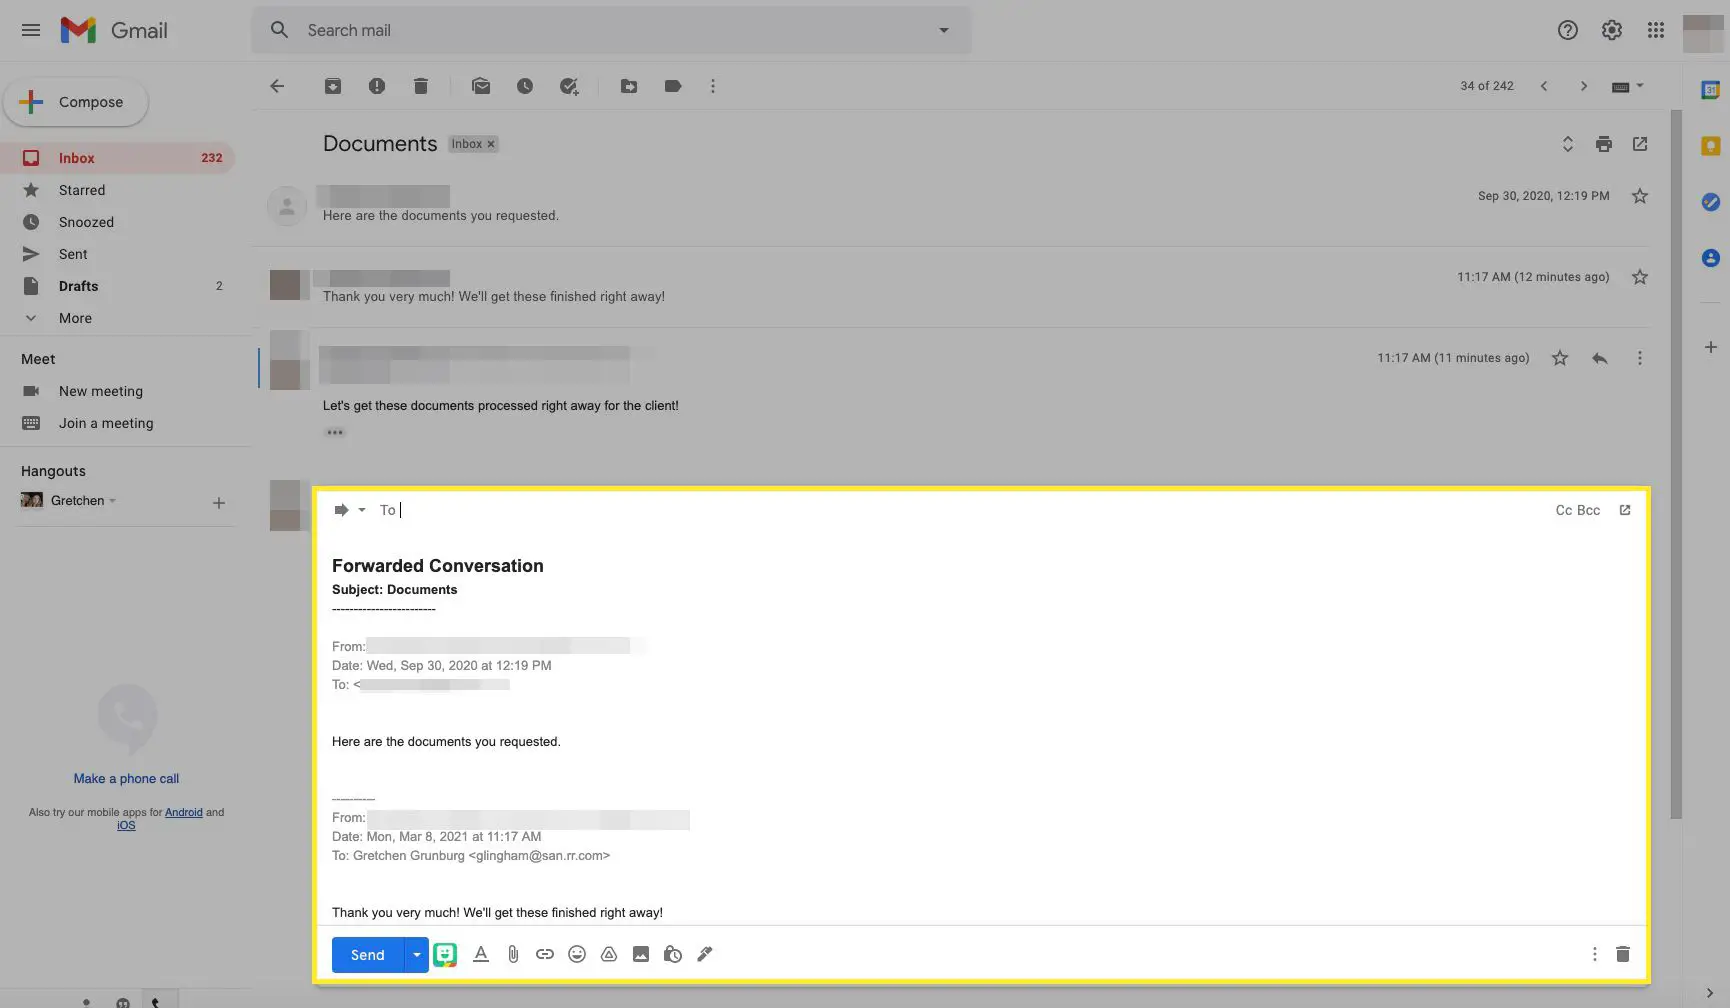 Encadeamento de e-mail do Gmail sendo encaminhado com Conversa encaminhada em destaque